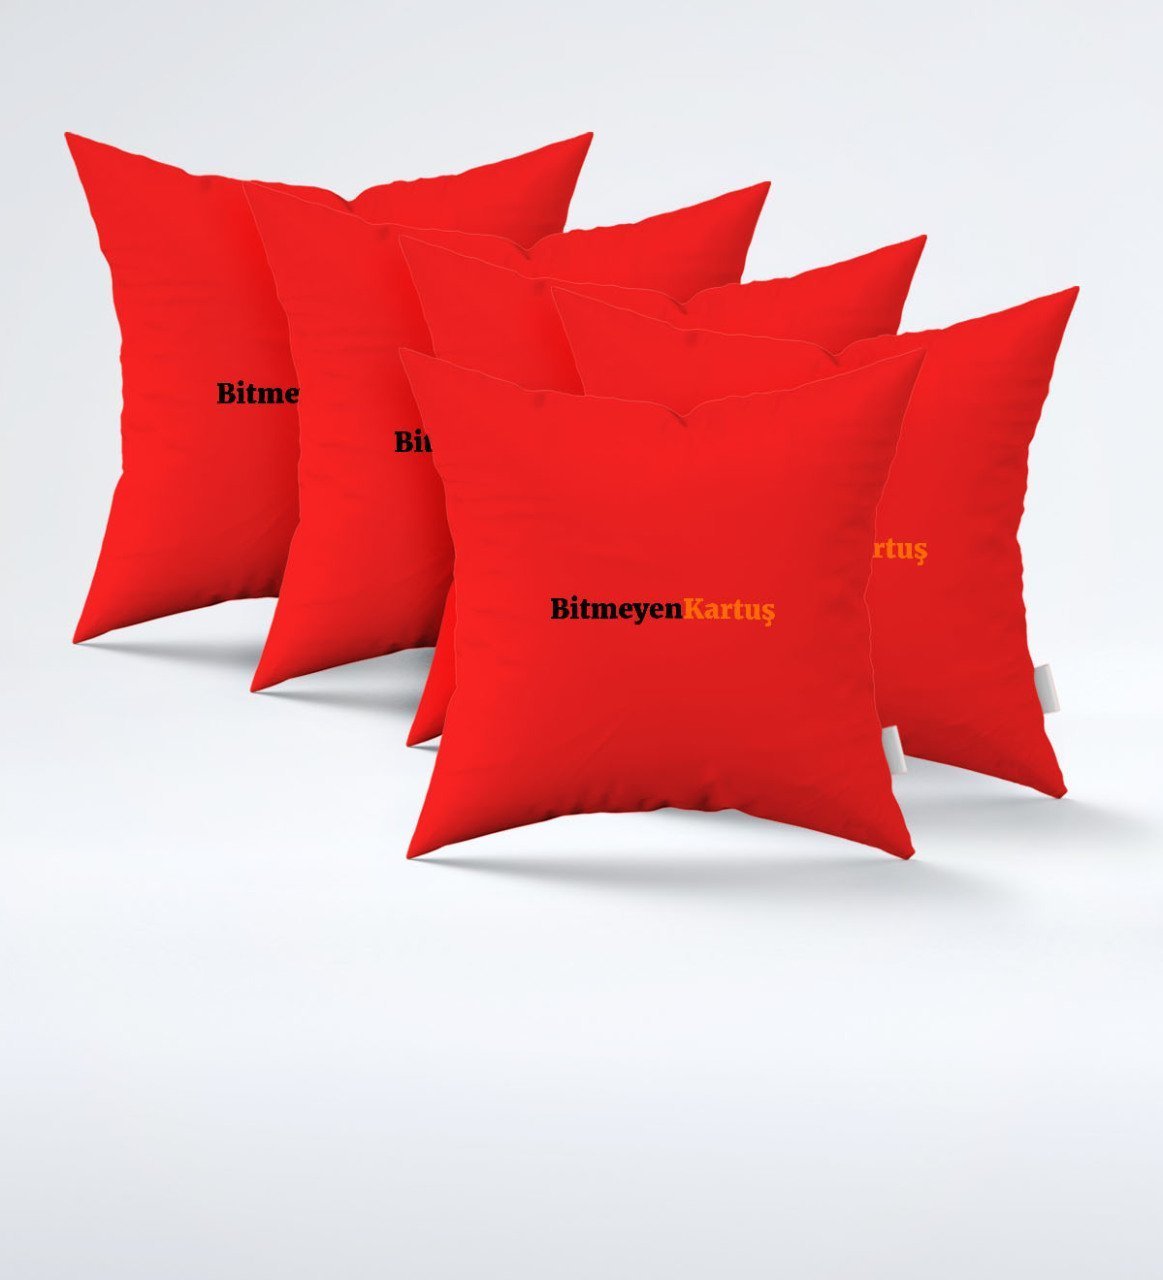 Firmalara Özel Logolu Kırmızı Yastık (5 Adet)